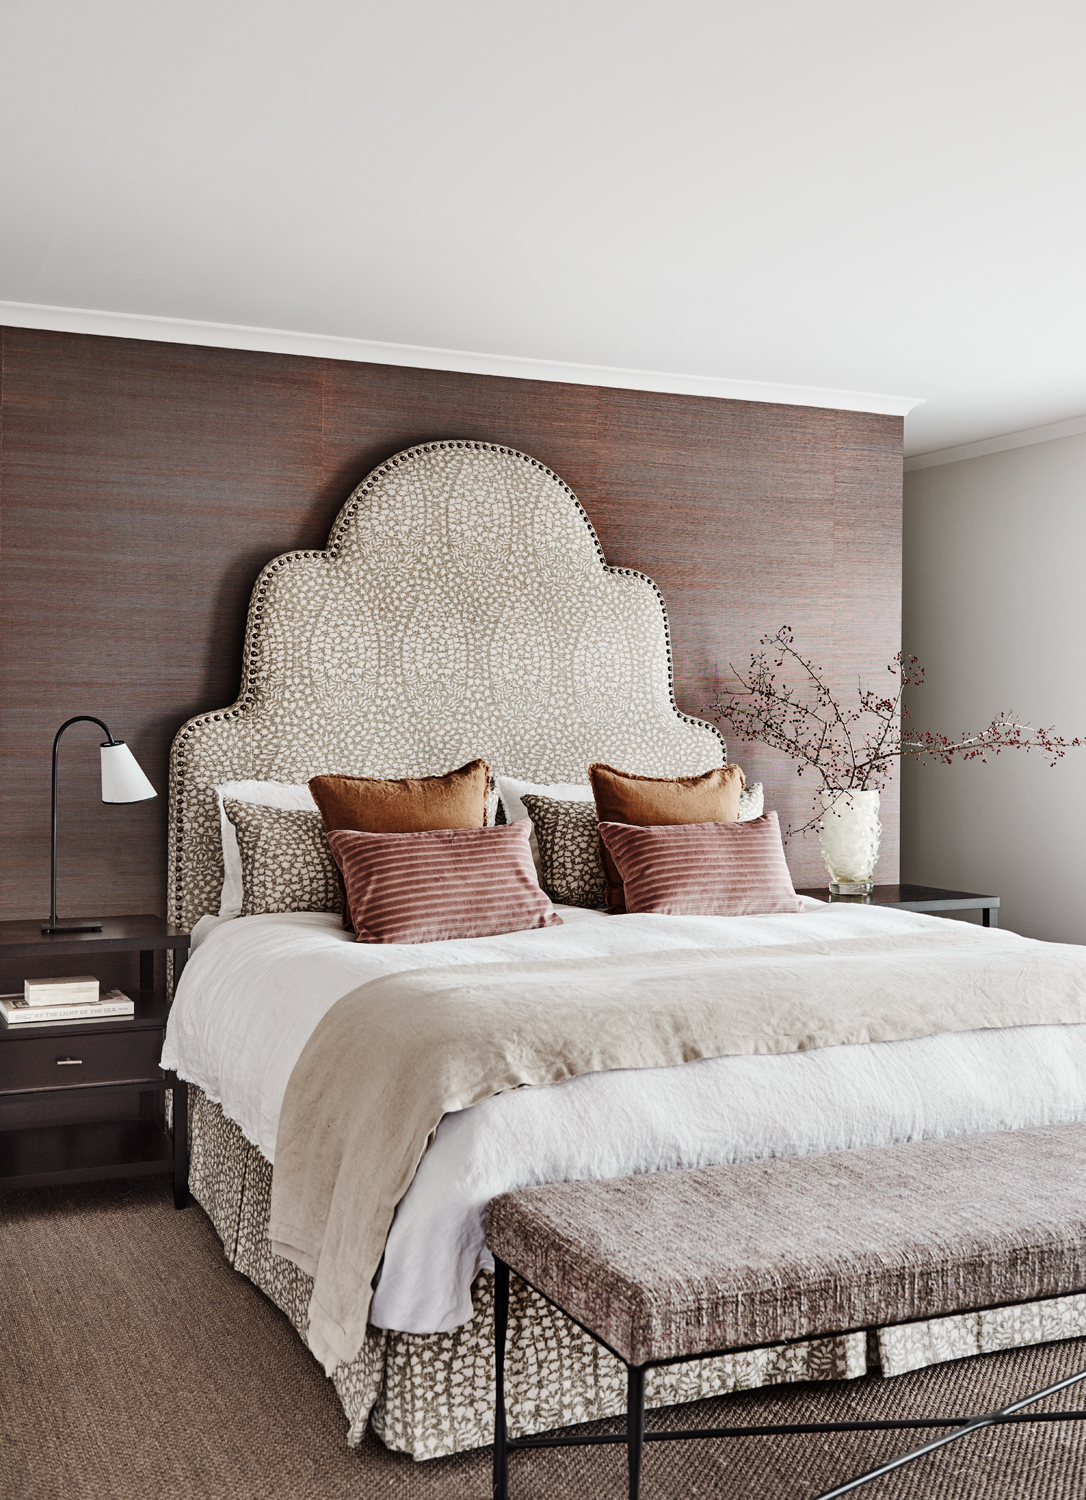 The Relais Christine, Paris - Bedroom Design